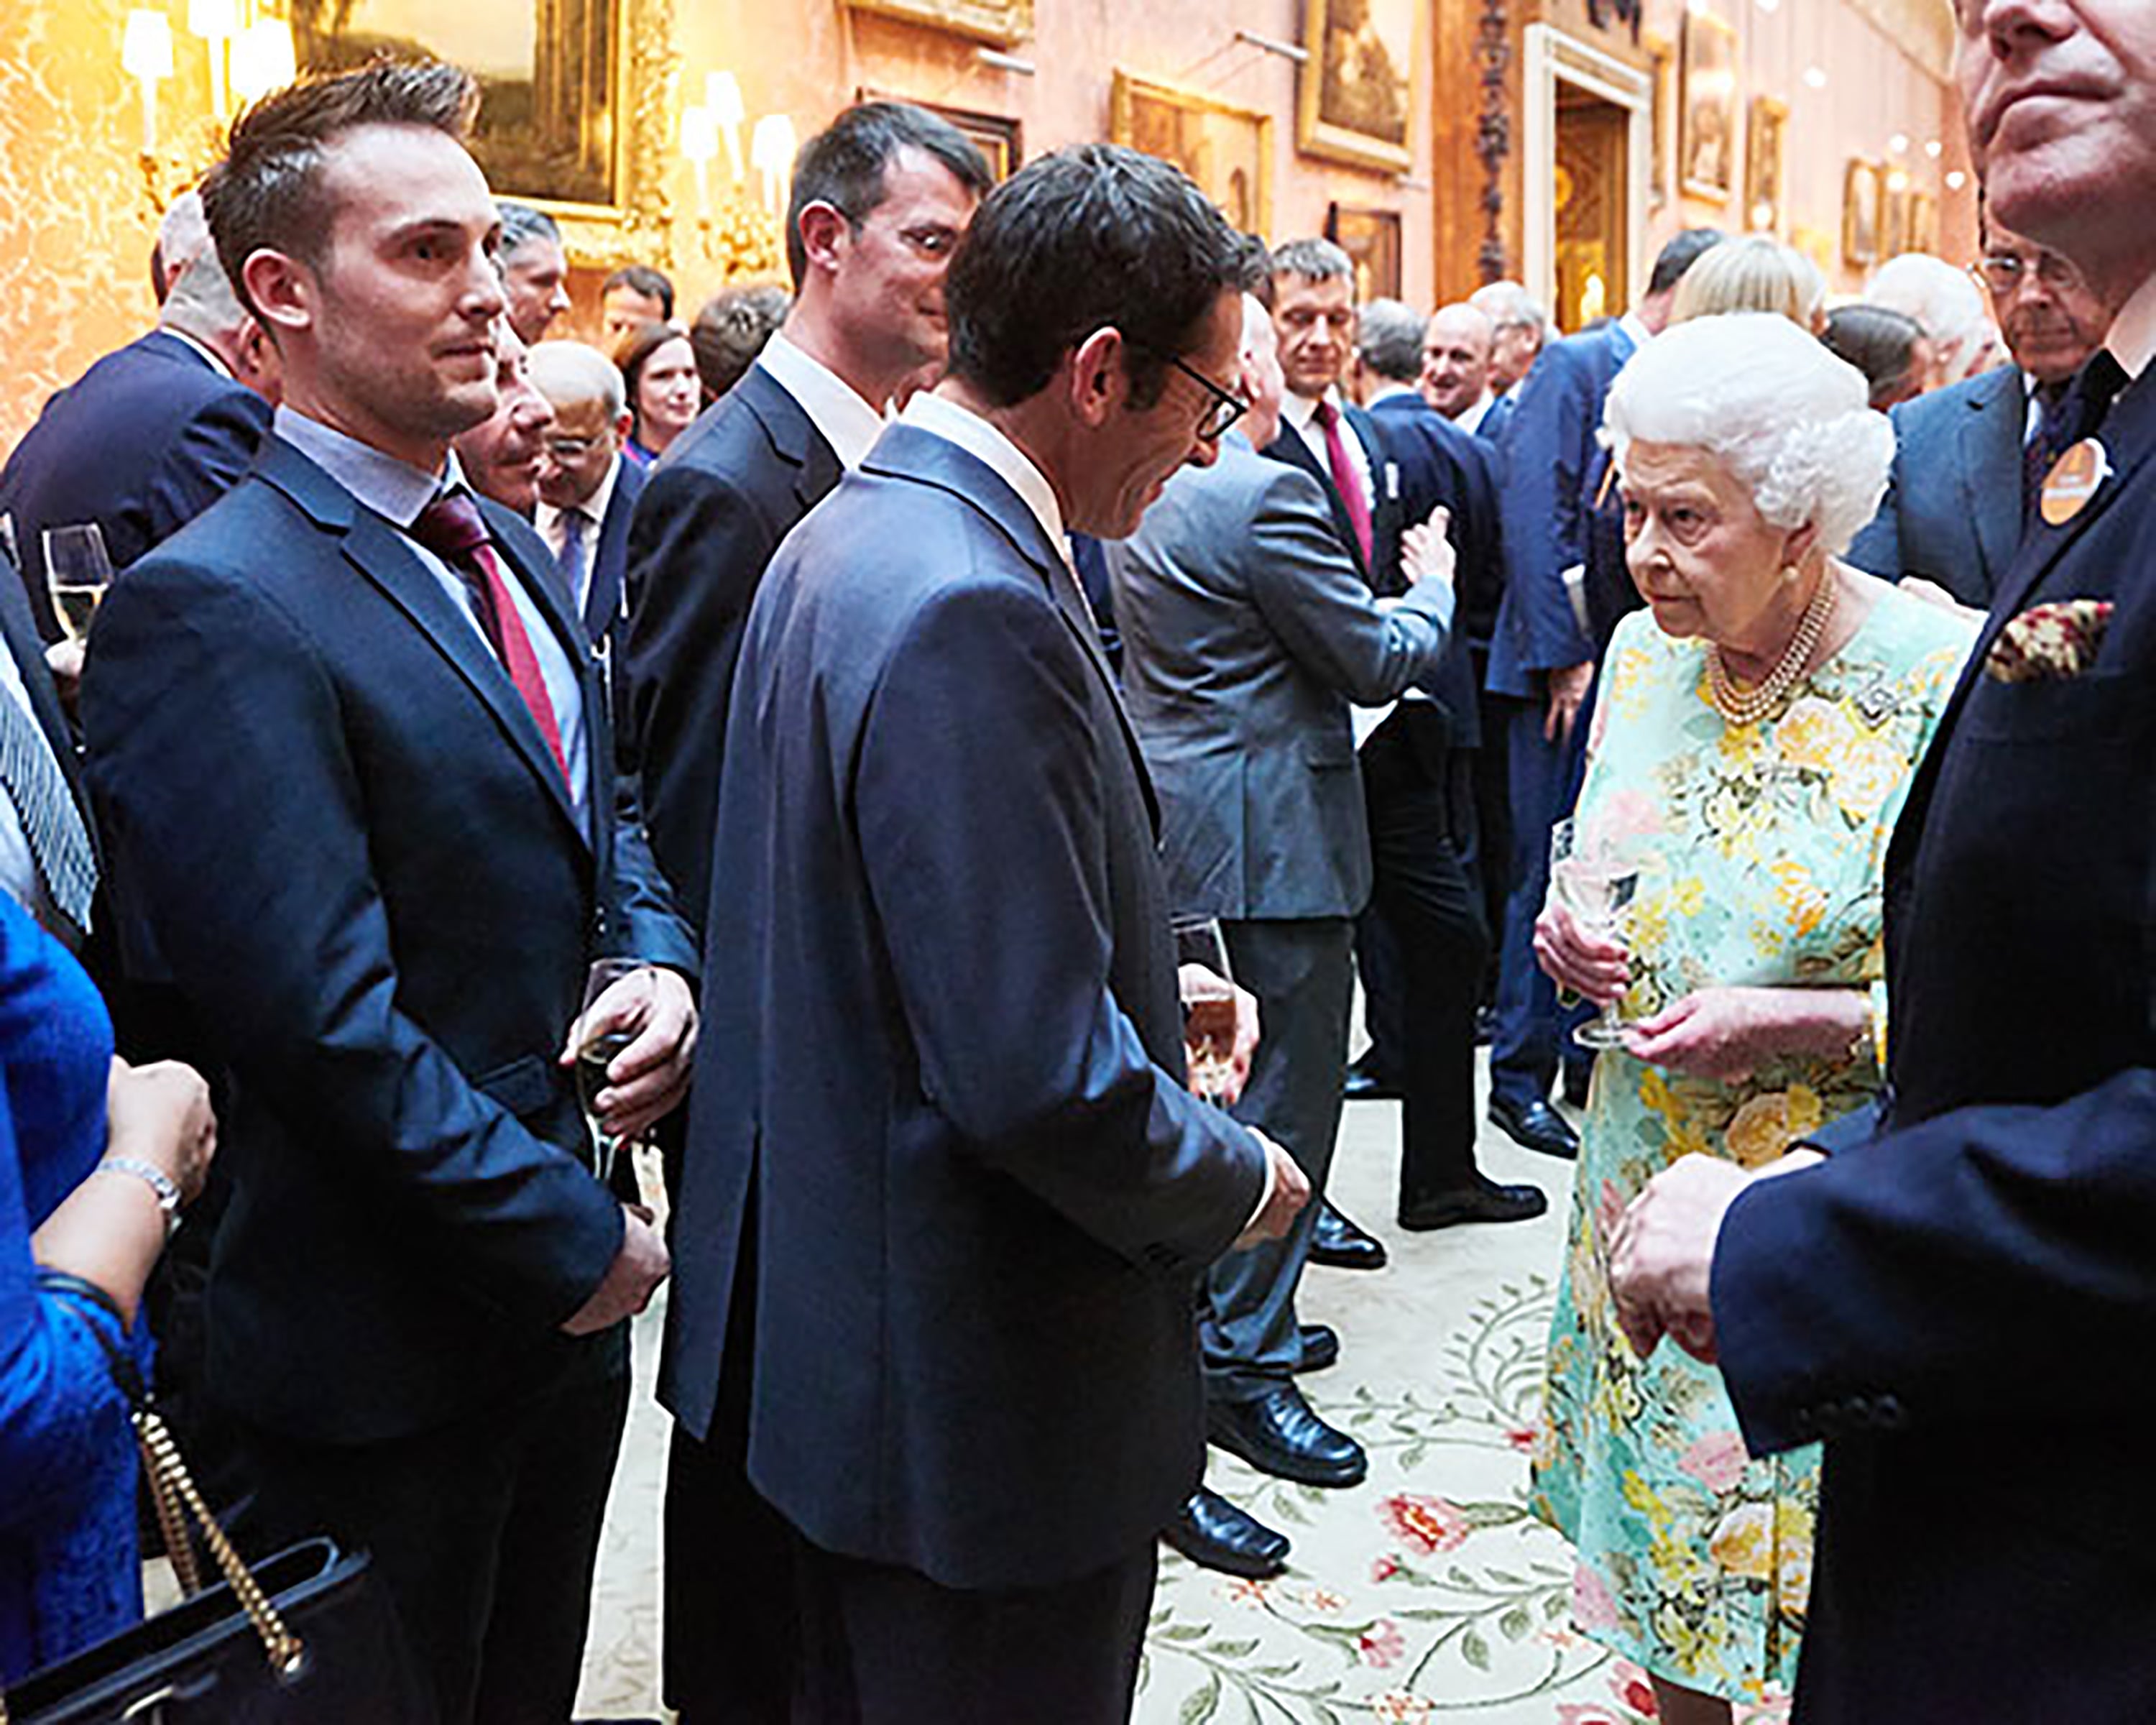 Jeremy meeting Queen Elizabeth, July 2017